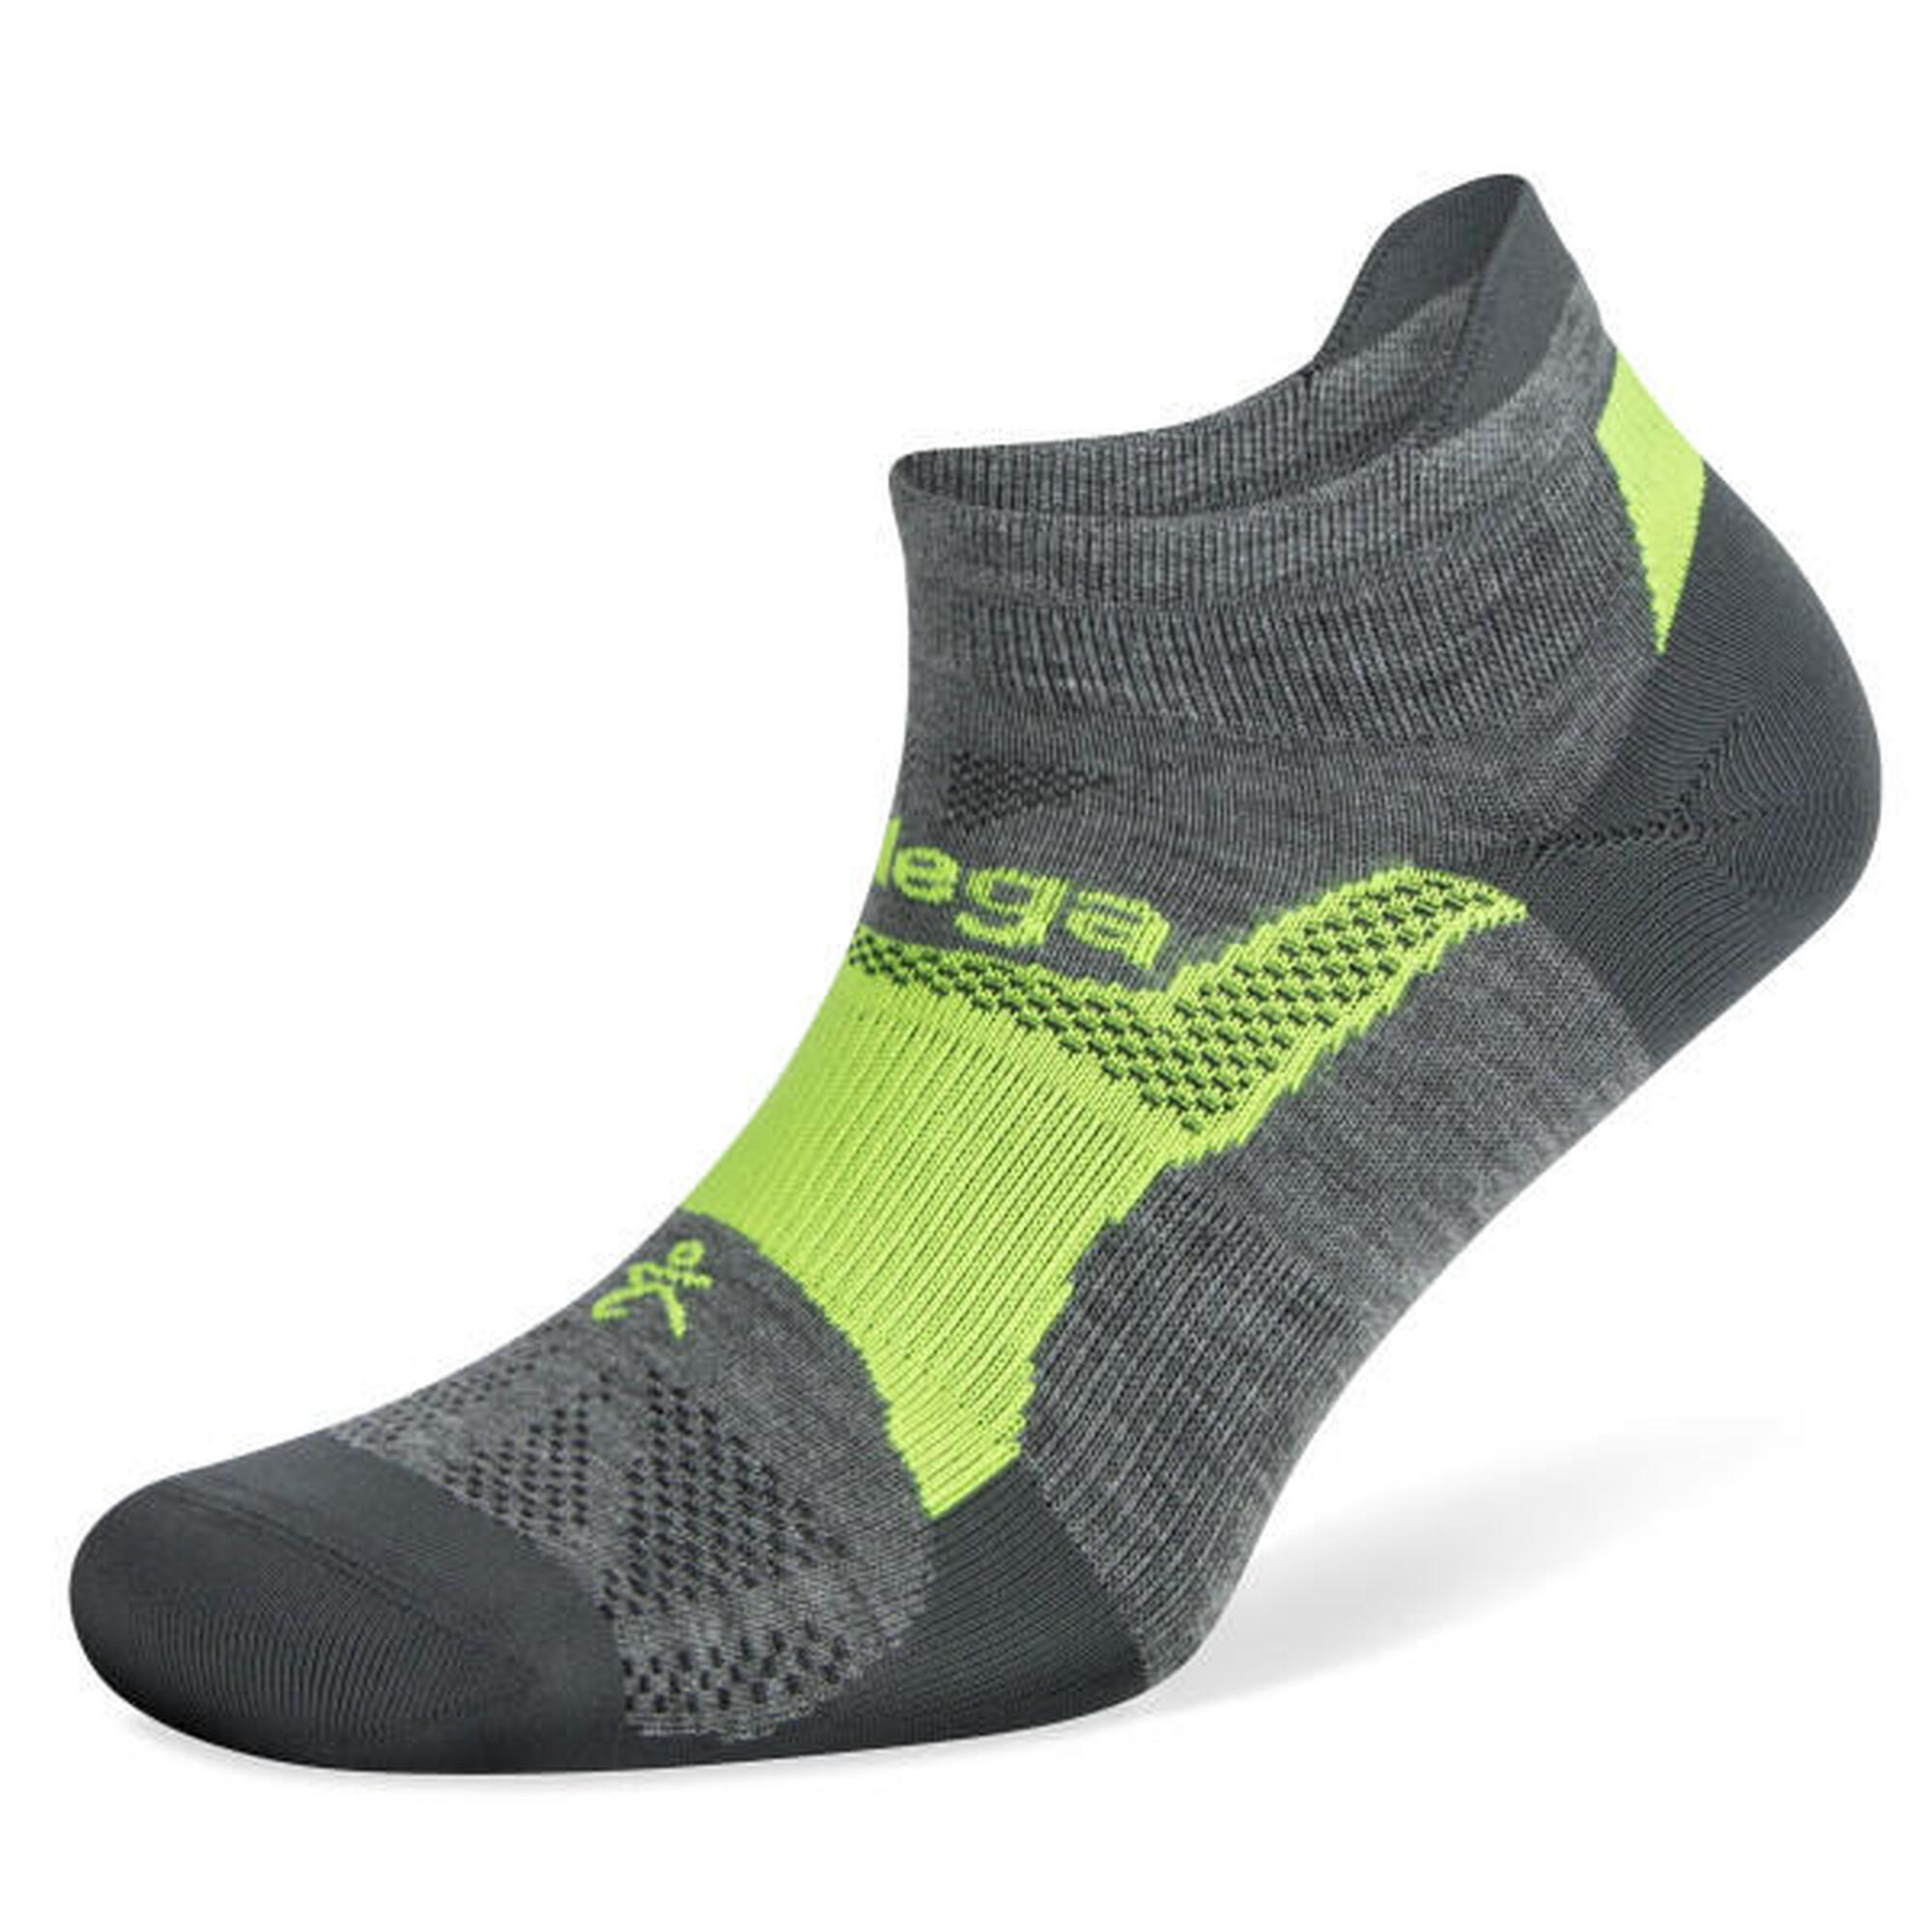 Balega Hidden Dry Socken: Leicht, atmungsaktiv und komfortabel beim Laufen.